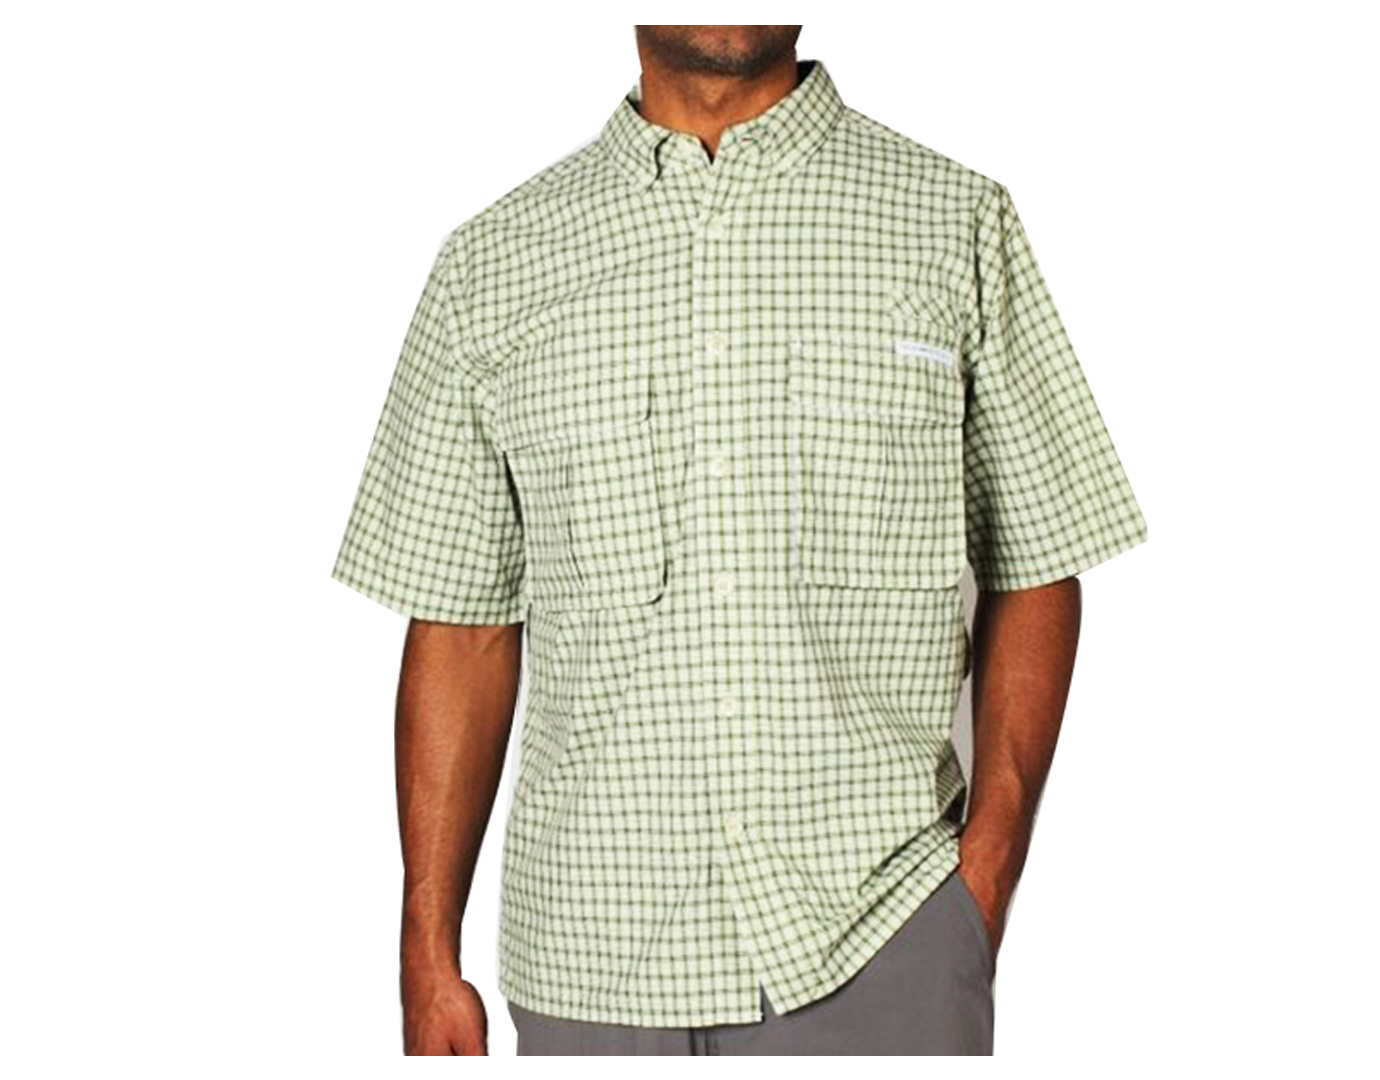 ExOfficio,Mens Air Strip Micro Plaid Short Sleeve Shirt - Olive